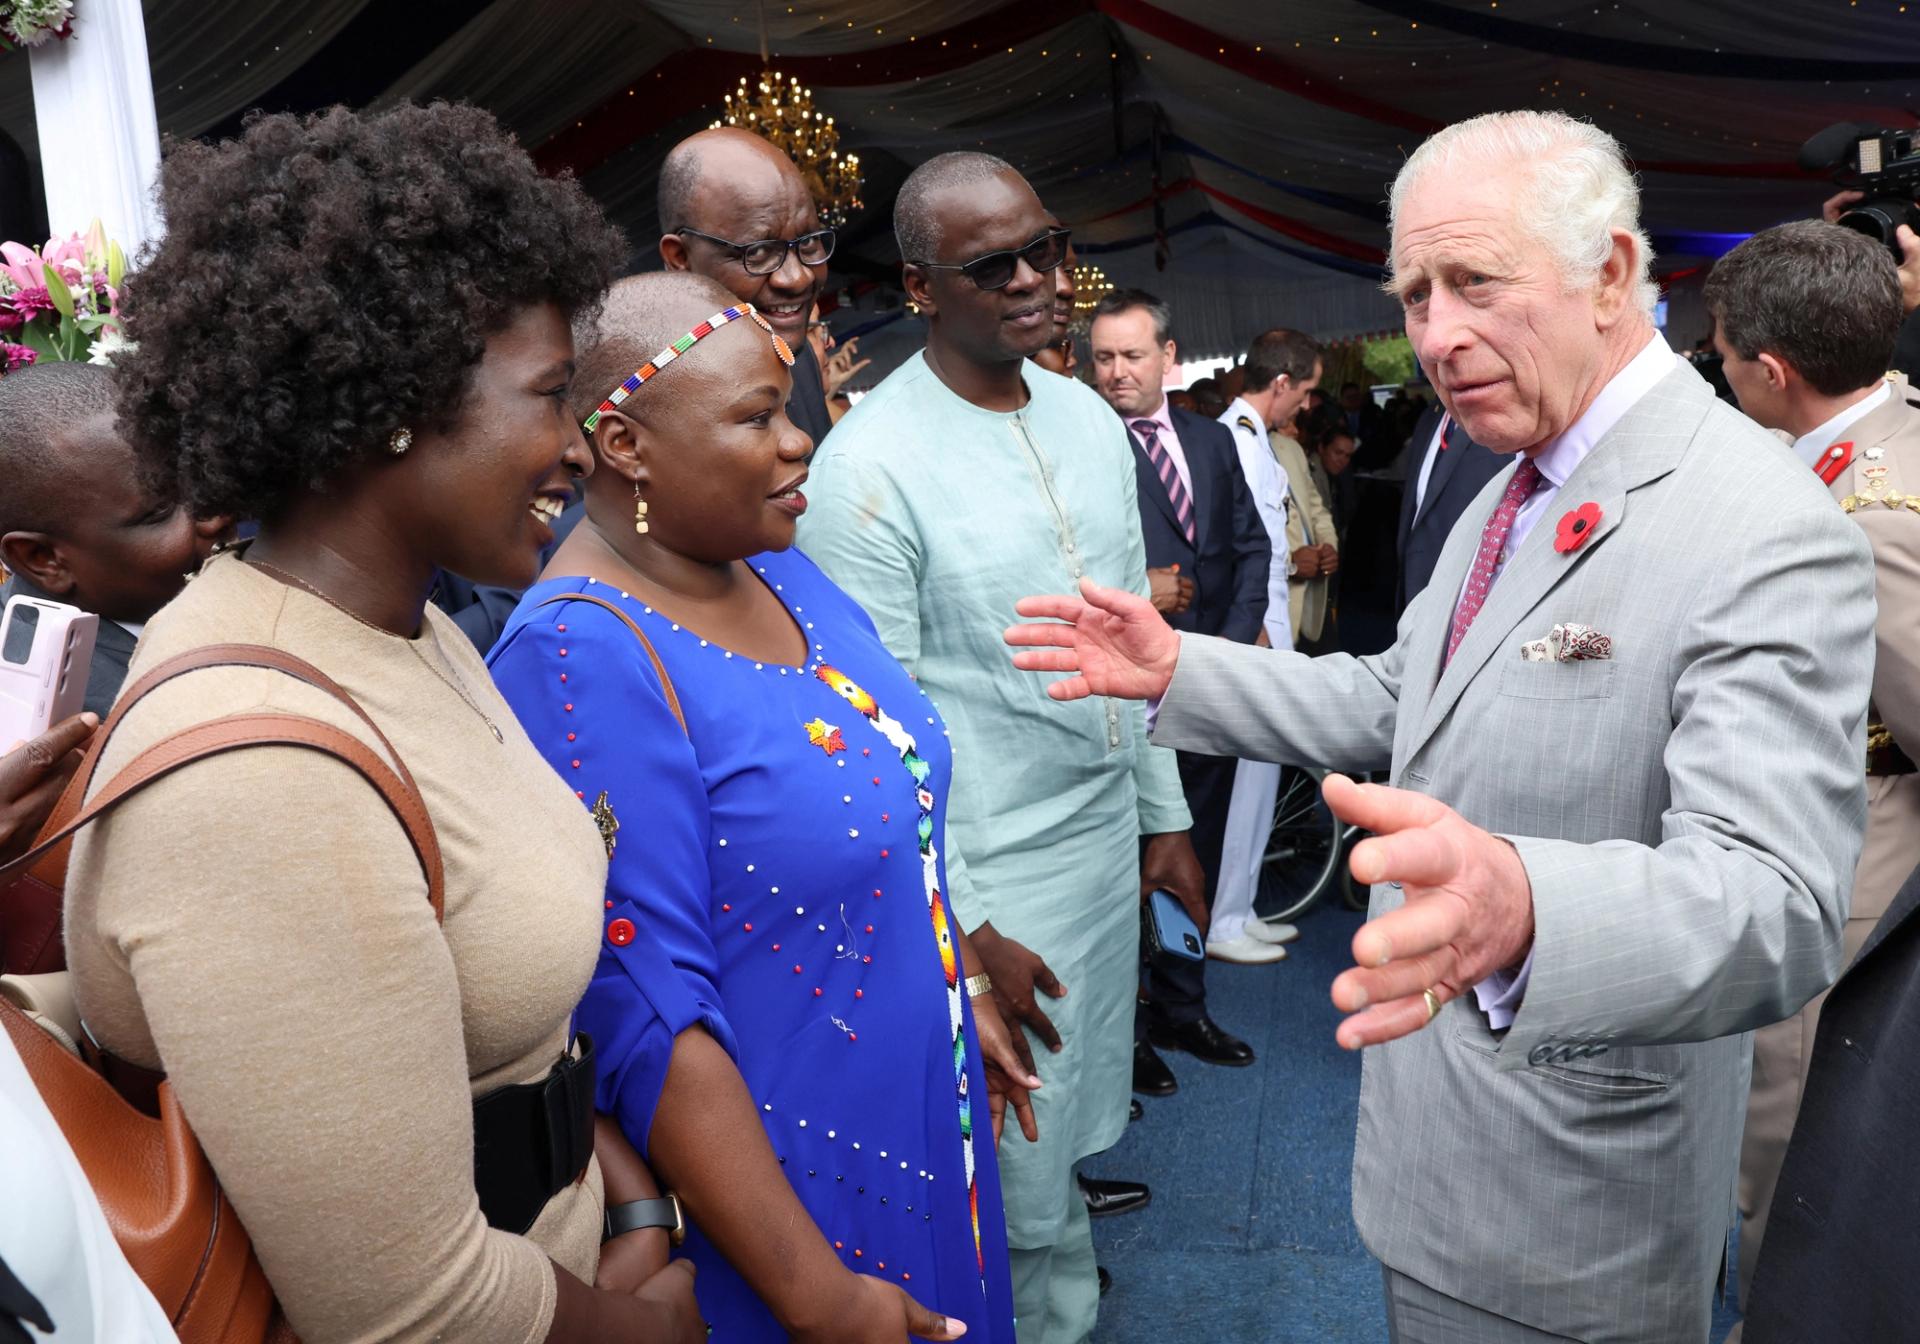 Britain's King Charles III meets with leaders in Kenya